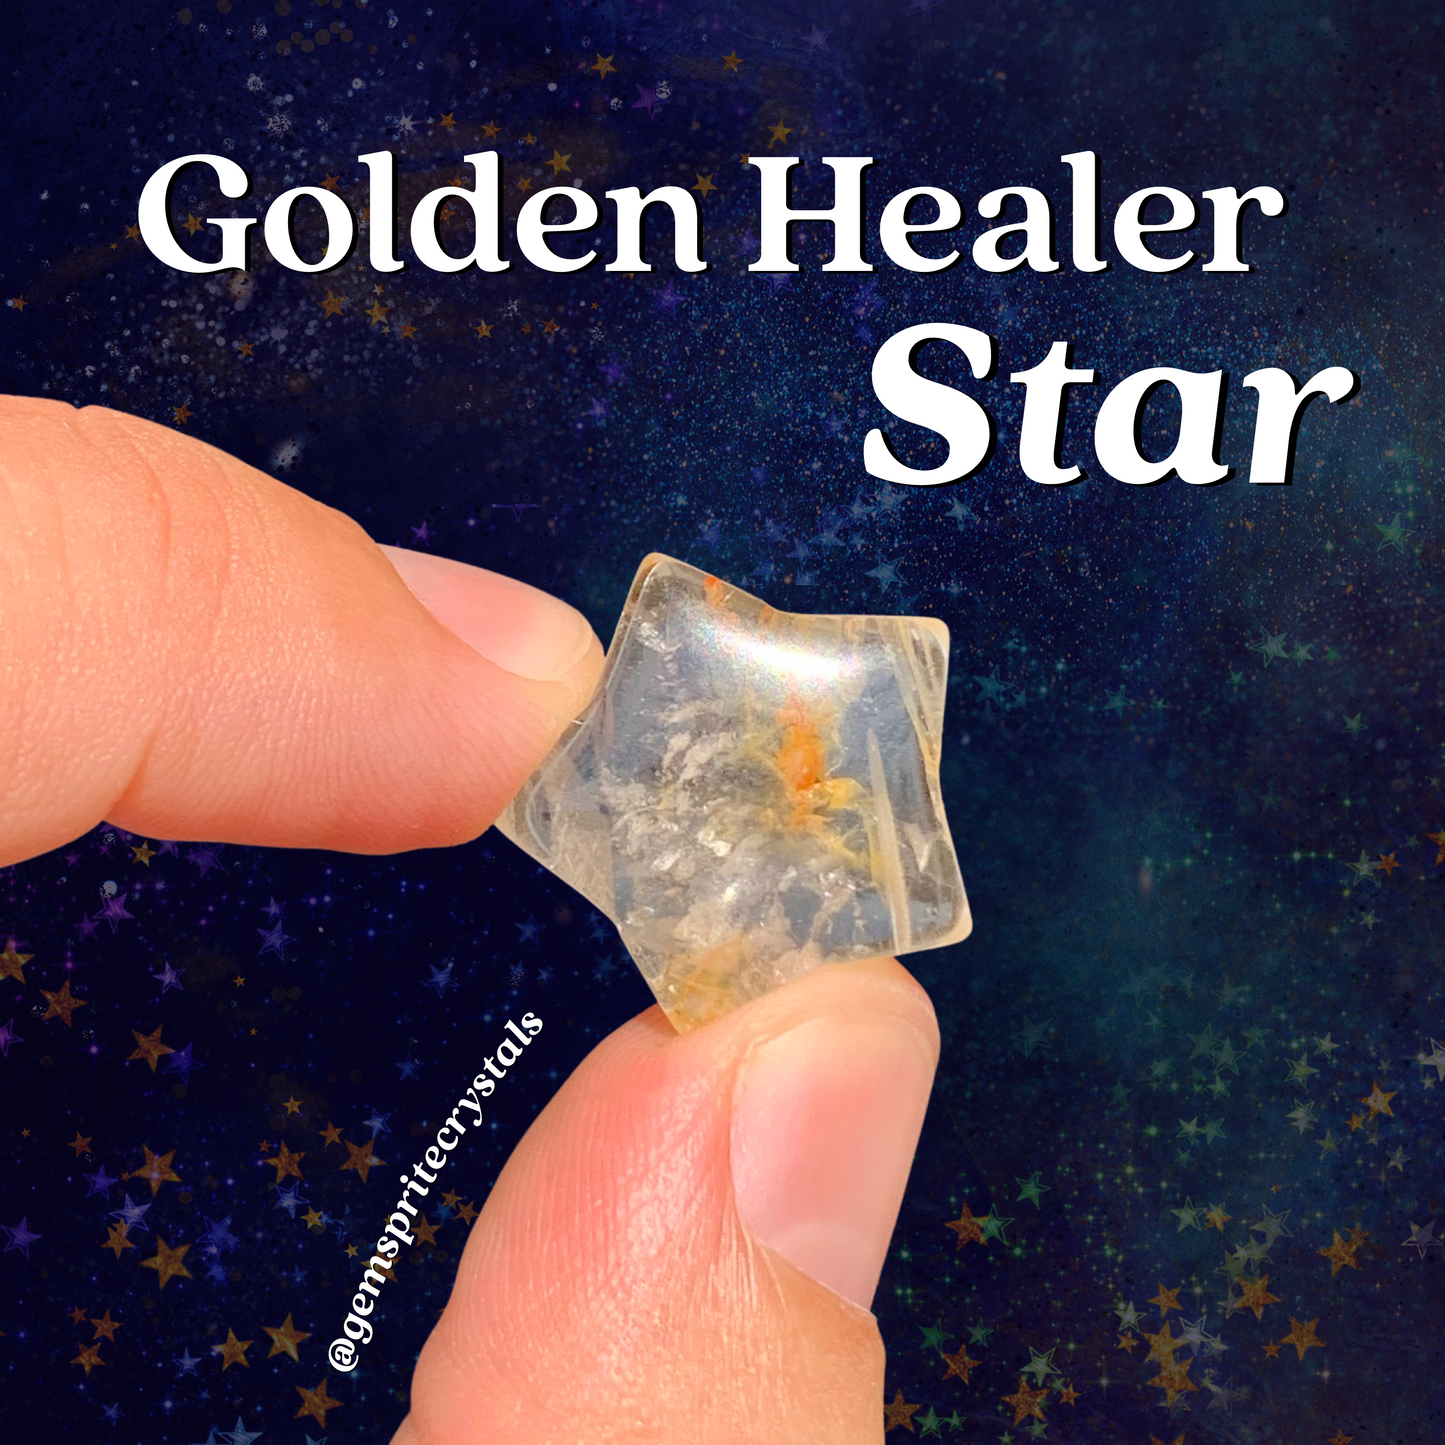 Golden Healer Star